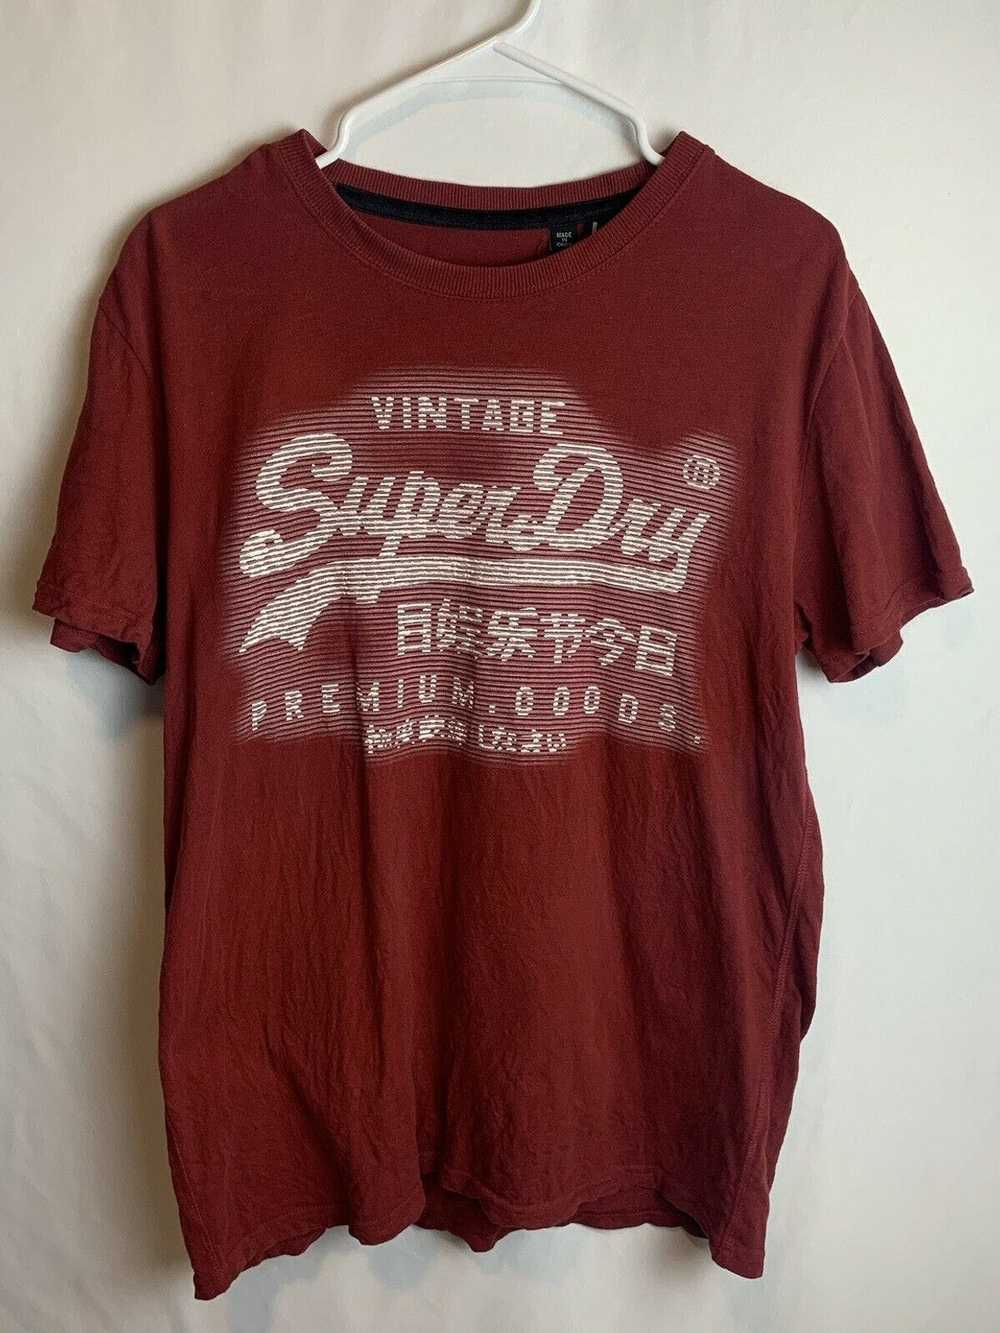 Other Vintage SuperDry Men’s T-Shirt Size Large C… - image 1